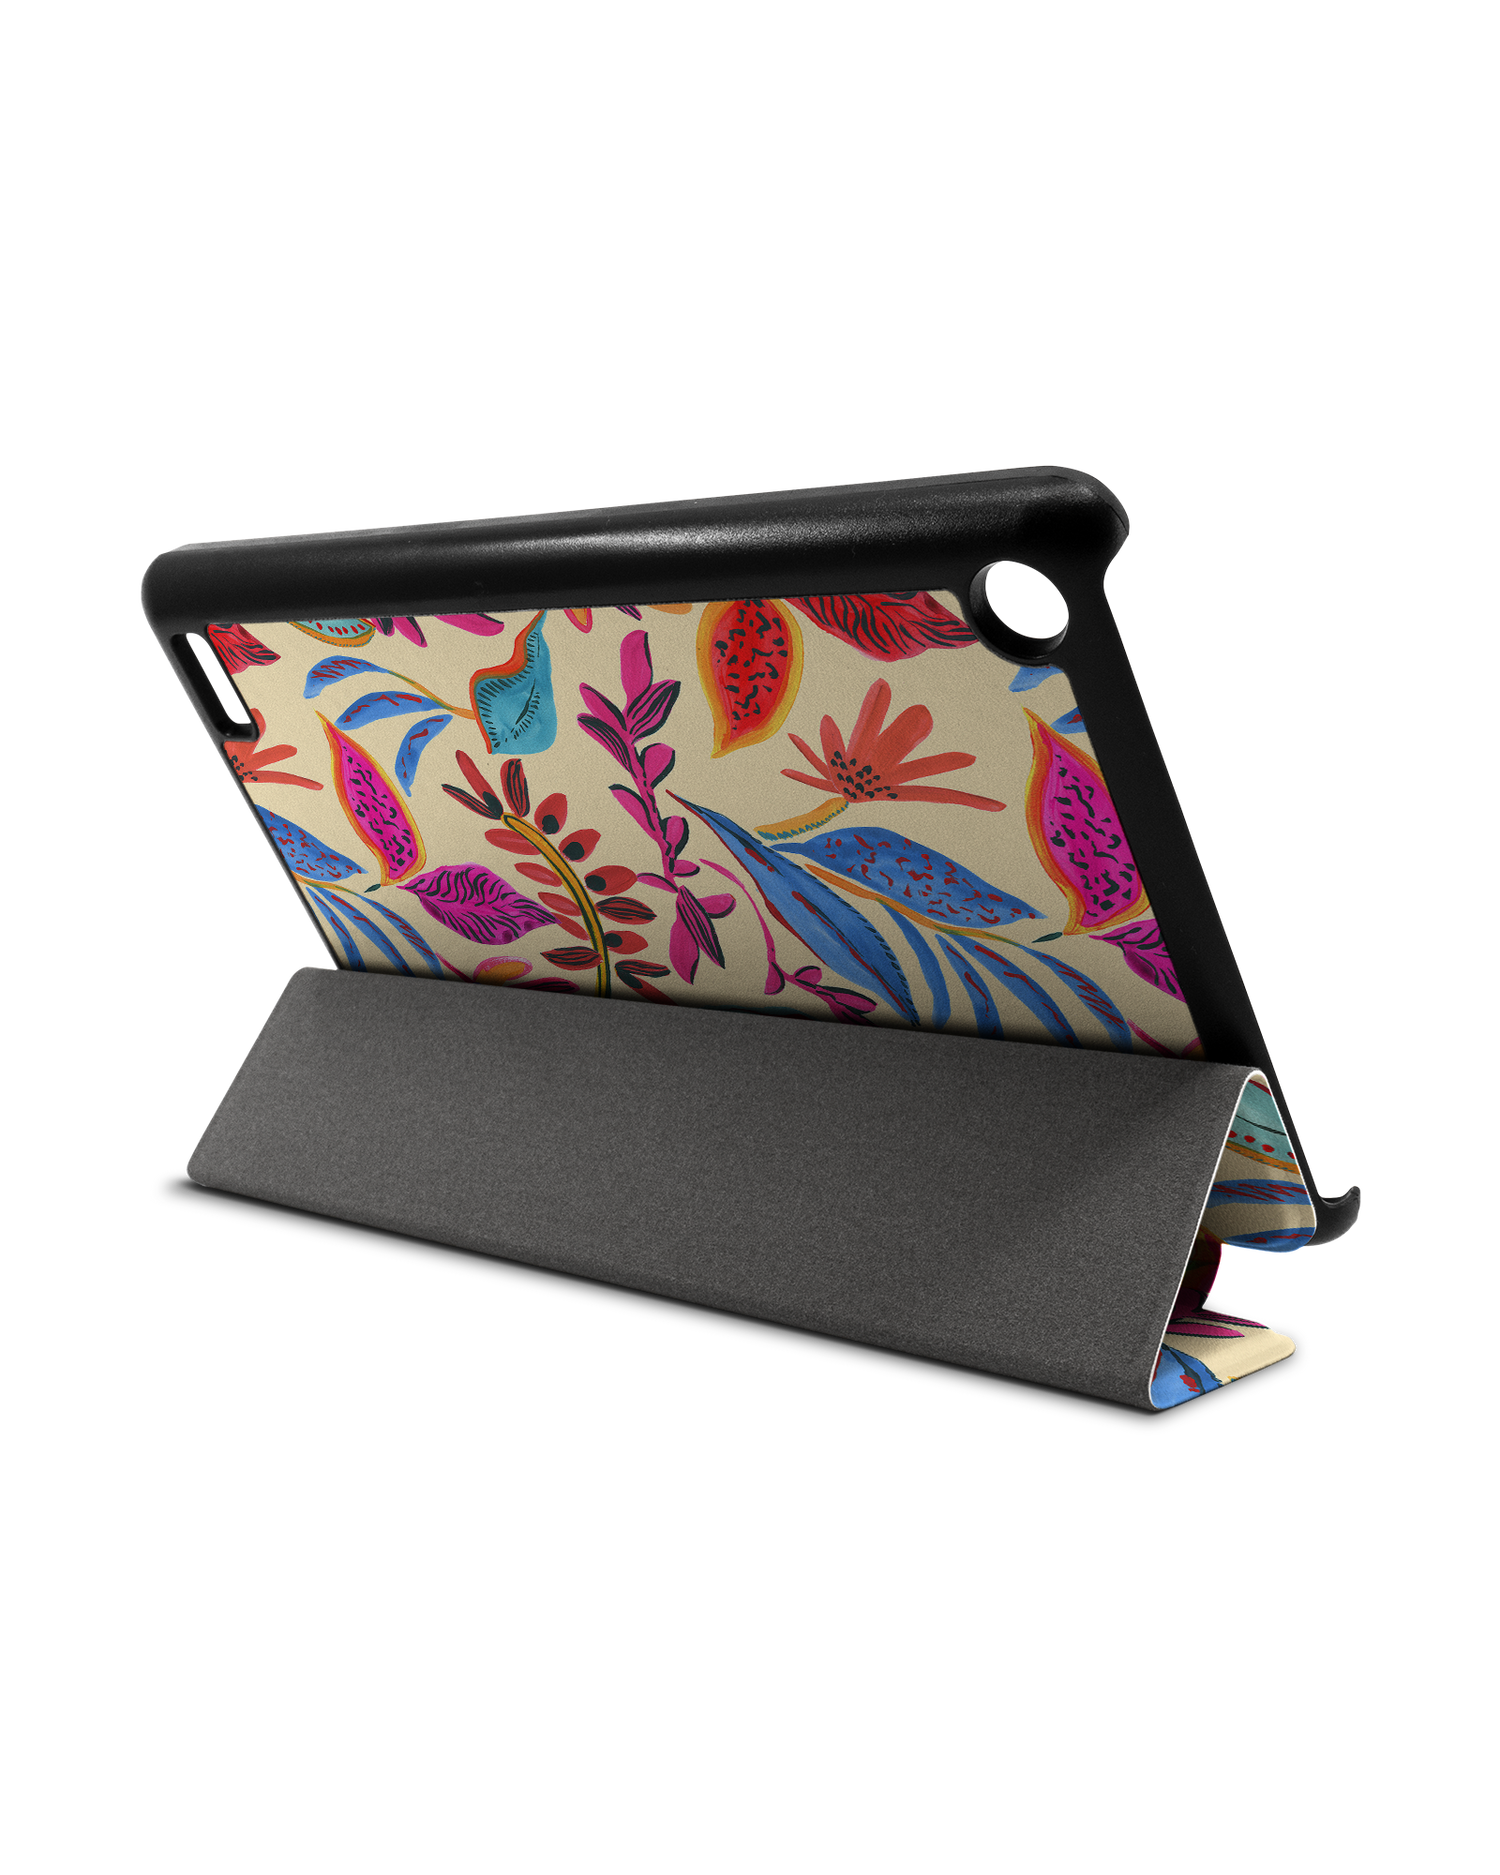 Painterly Spring Leaves Tablet Smart Case für Amazon Fire 7: Aufgestellt im Querformat